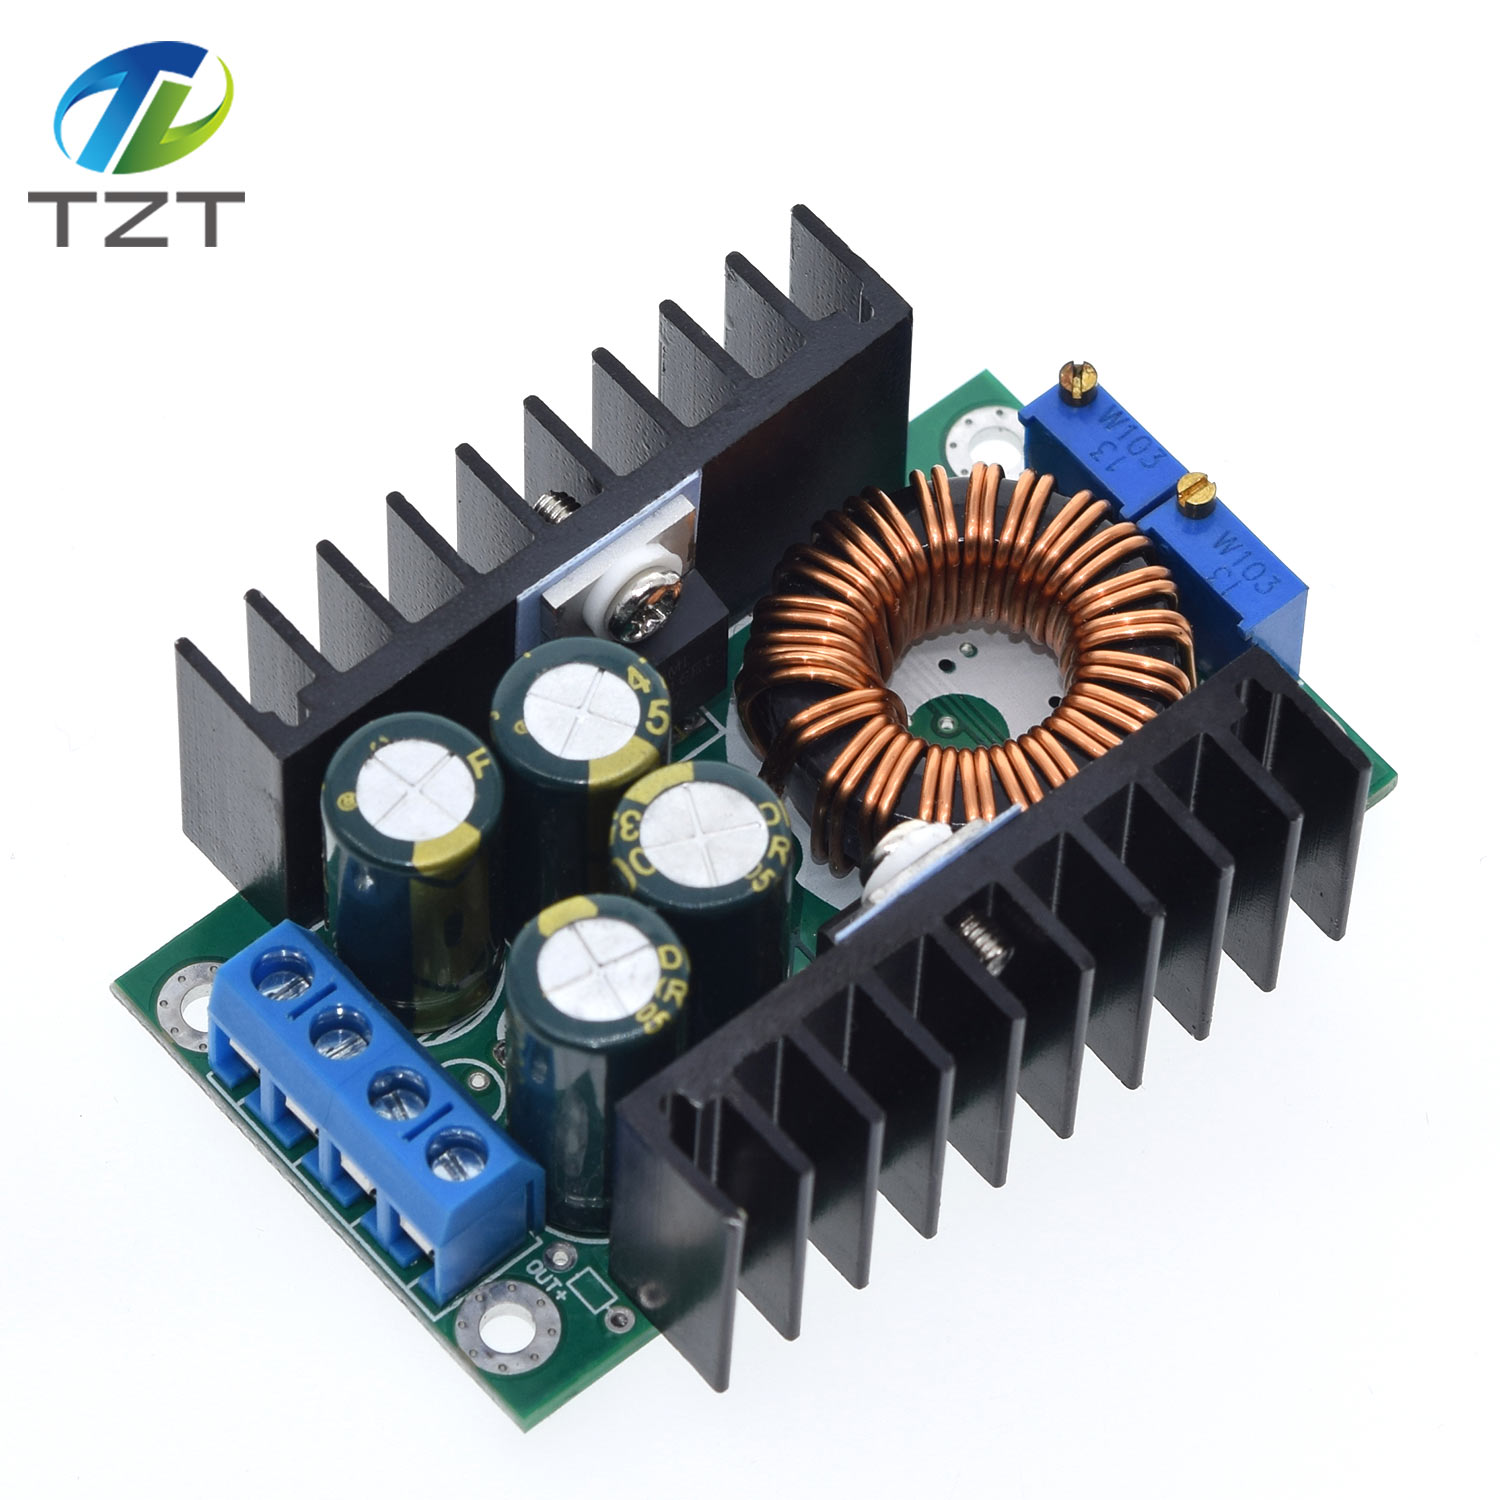 TZT DIY Electric Unit High quality C-D C CC CV Buck Converter Step-down Power Module 7-32V to 0.8-28V 9A 300W XL4016